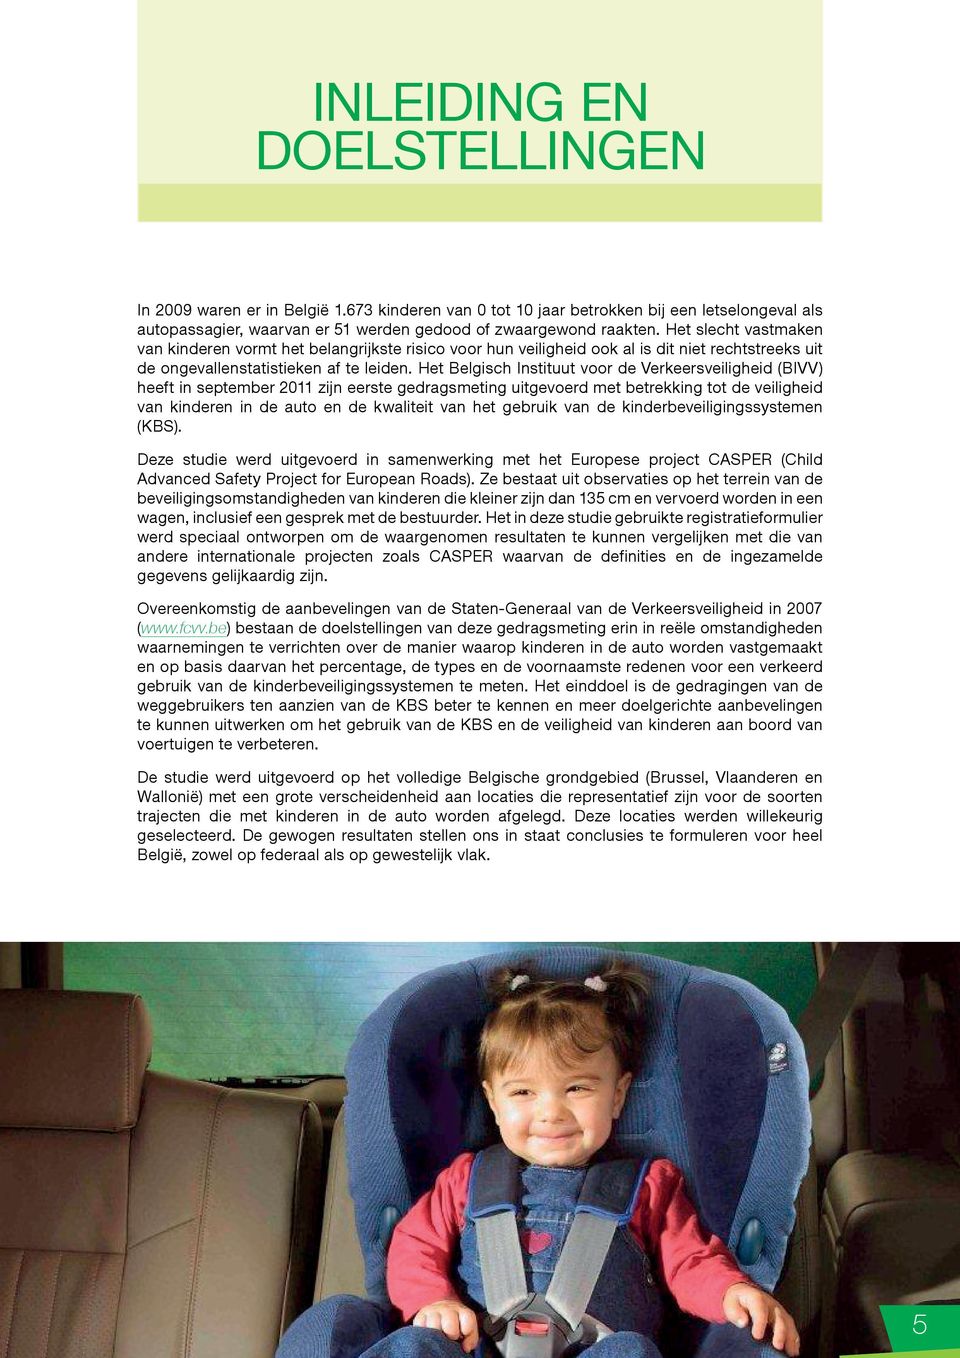 Het Belgisch Instituut voor de Verkeersveiligheid (BIVV) heeft in september 2011 zijn eerste gedragsmeting uitgevoerd met betrekking tot de veiligheid van kinderen in de auto en de kwaliteit van het